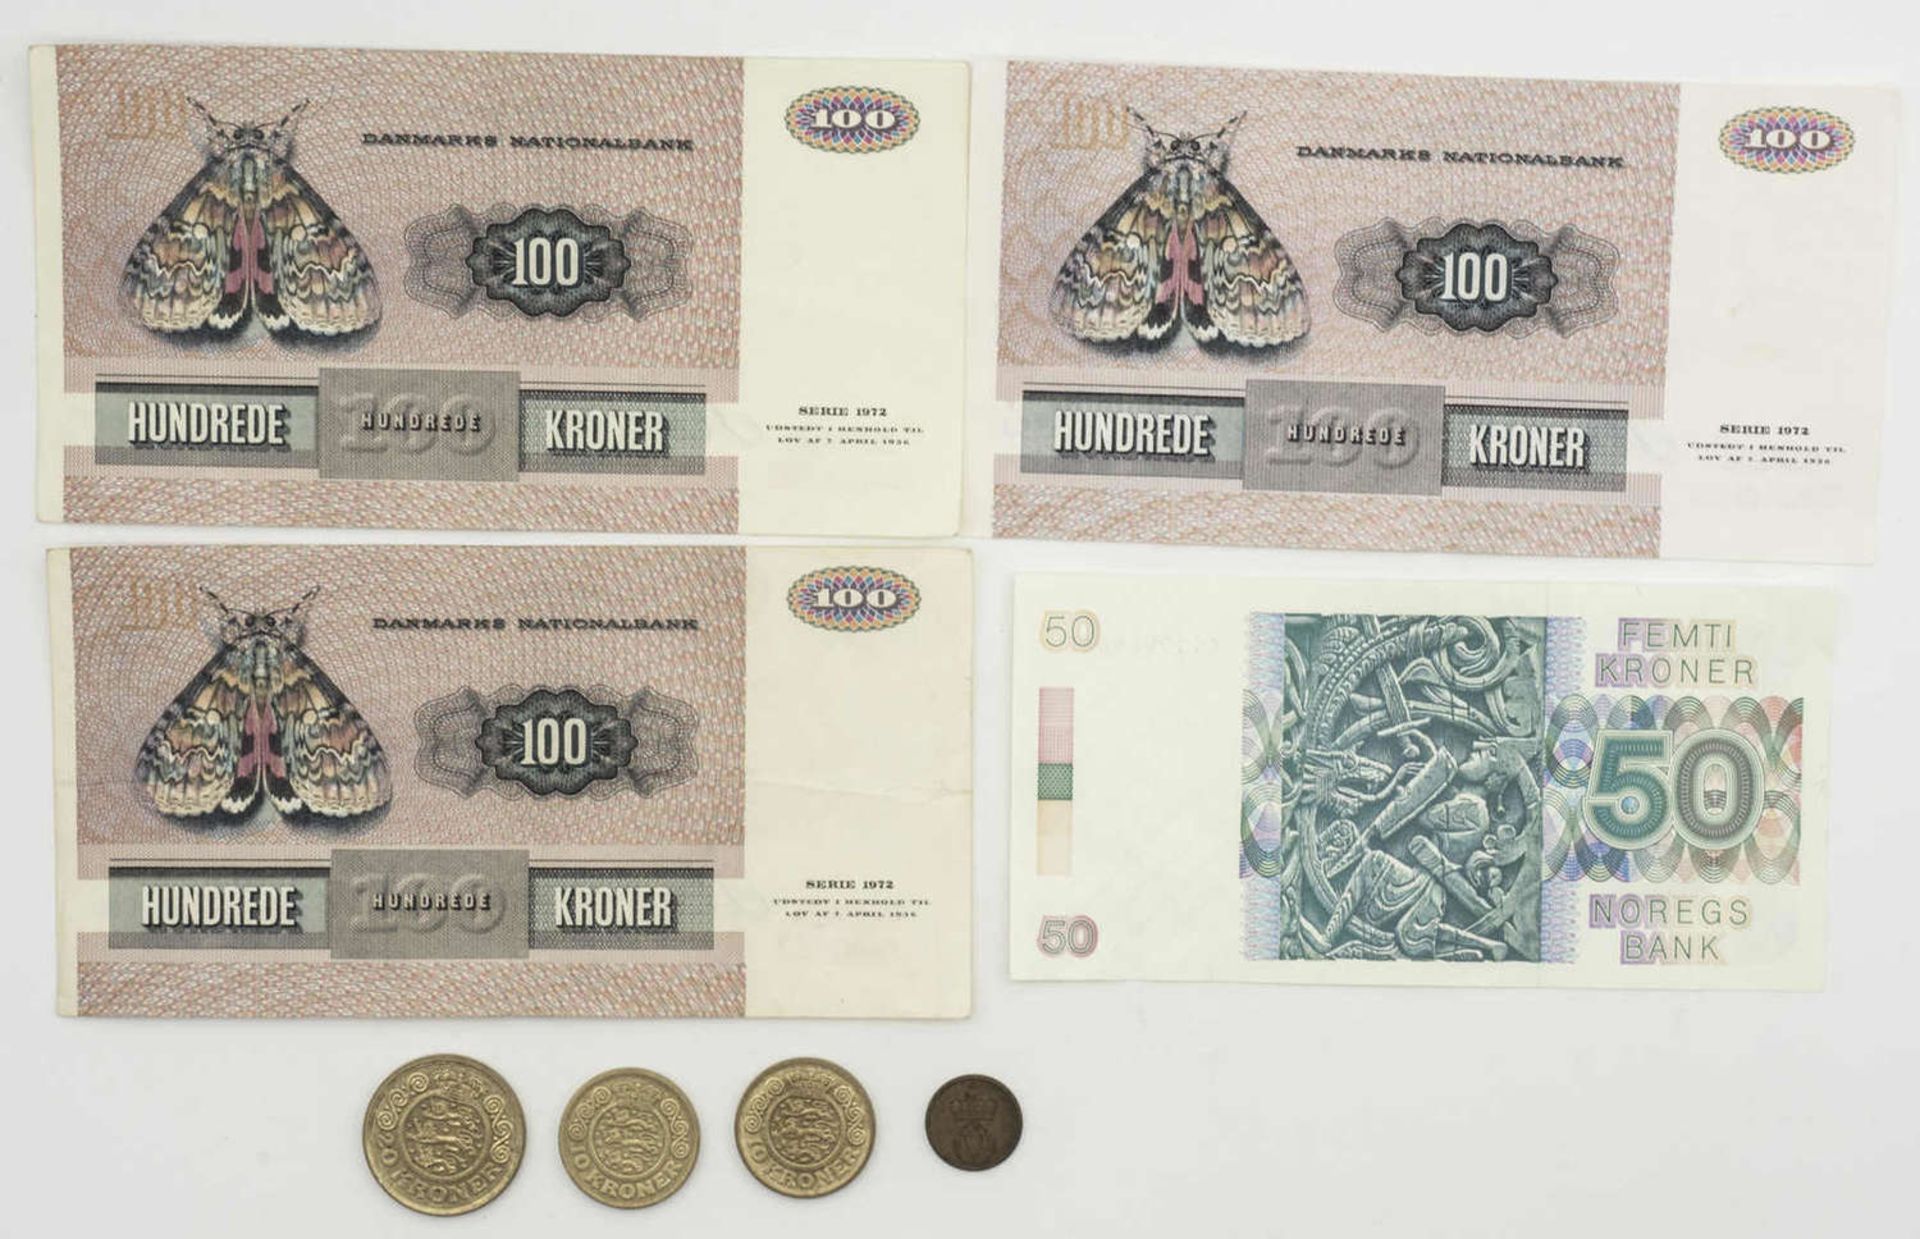 Dänemark, drei 100.- Kronen Banknoten plus etwas Kleingeld. Dazu Norwegen eine 50 Kronen Banknote.